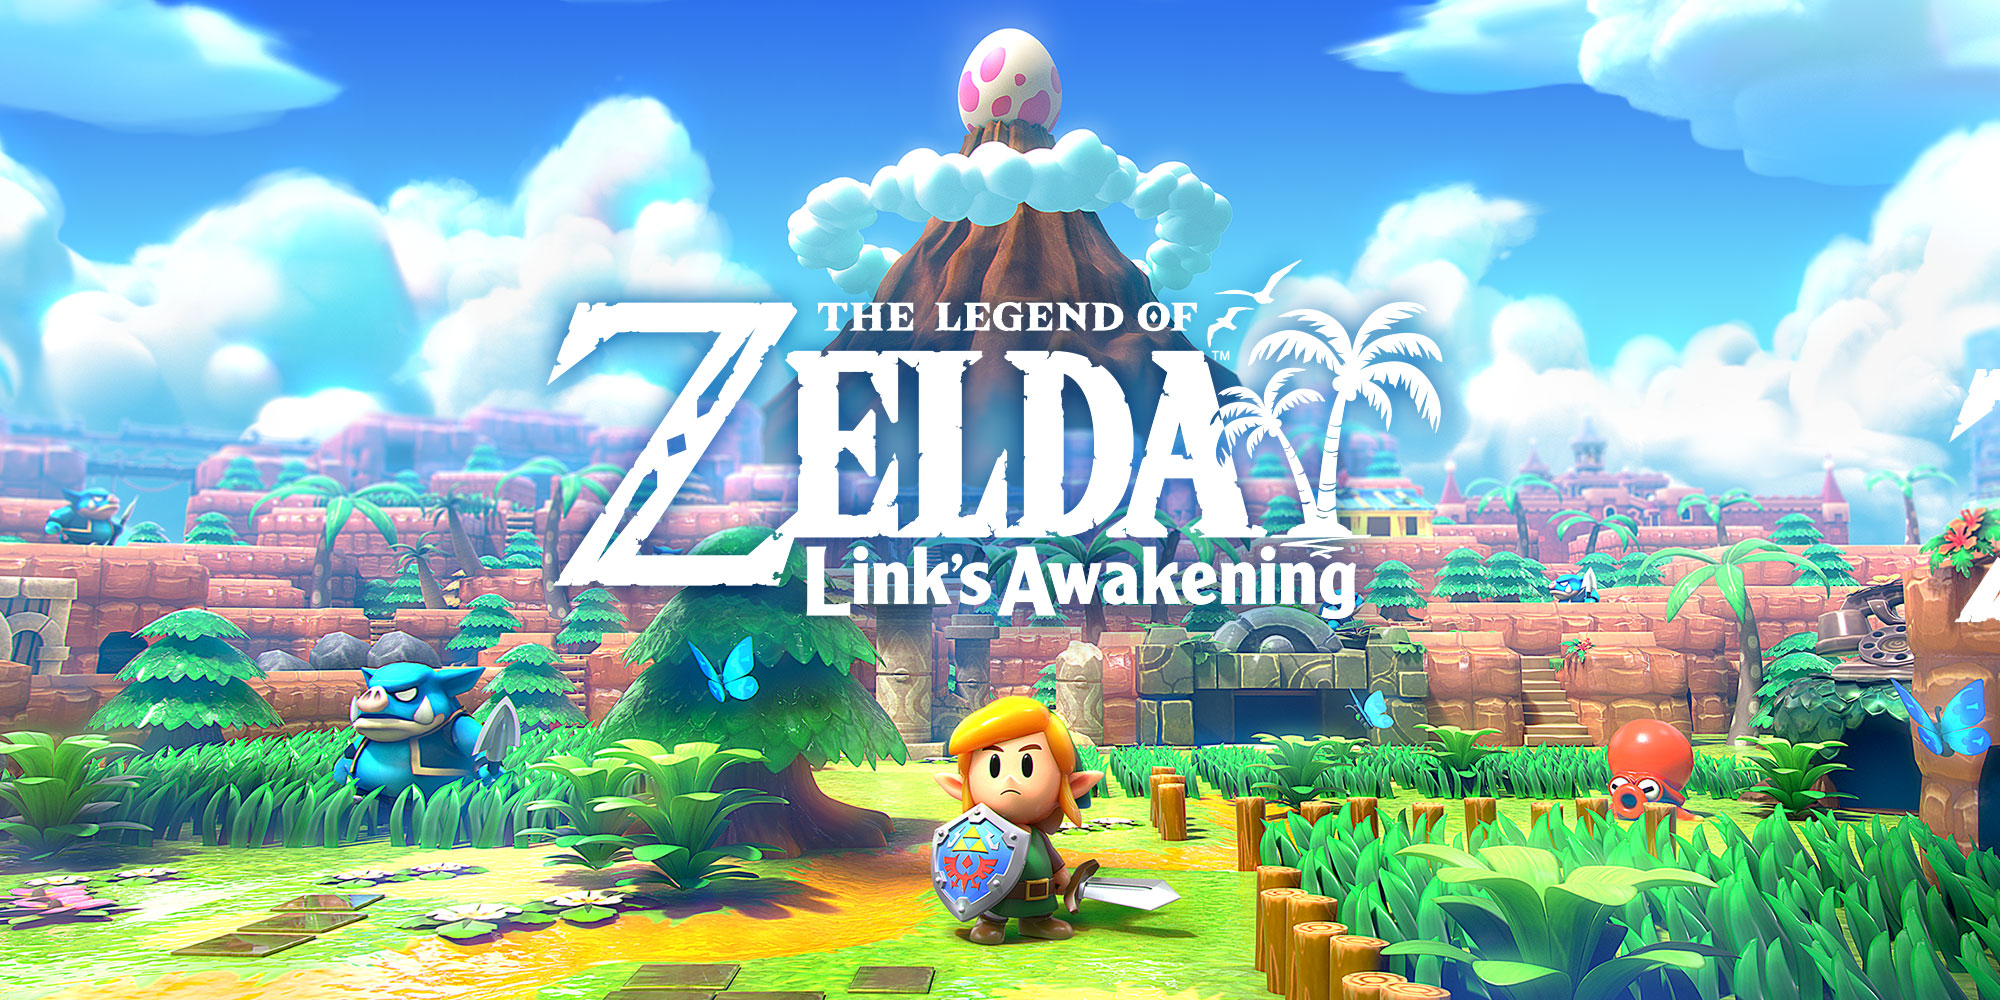 Descobre mais sobre The Legend of Zelda: Link’s Awakening com o produtor da série, Eiji Aonuma!